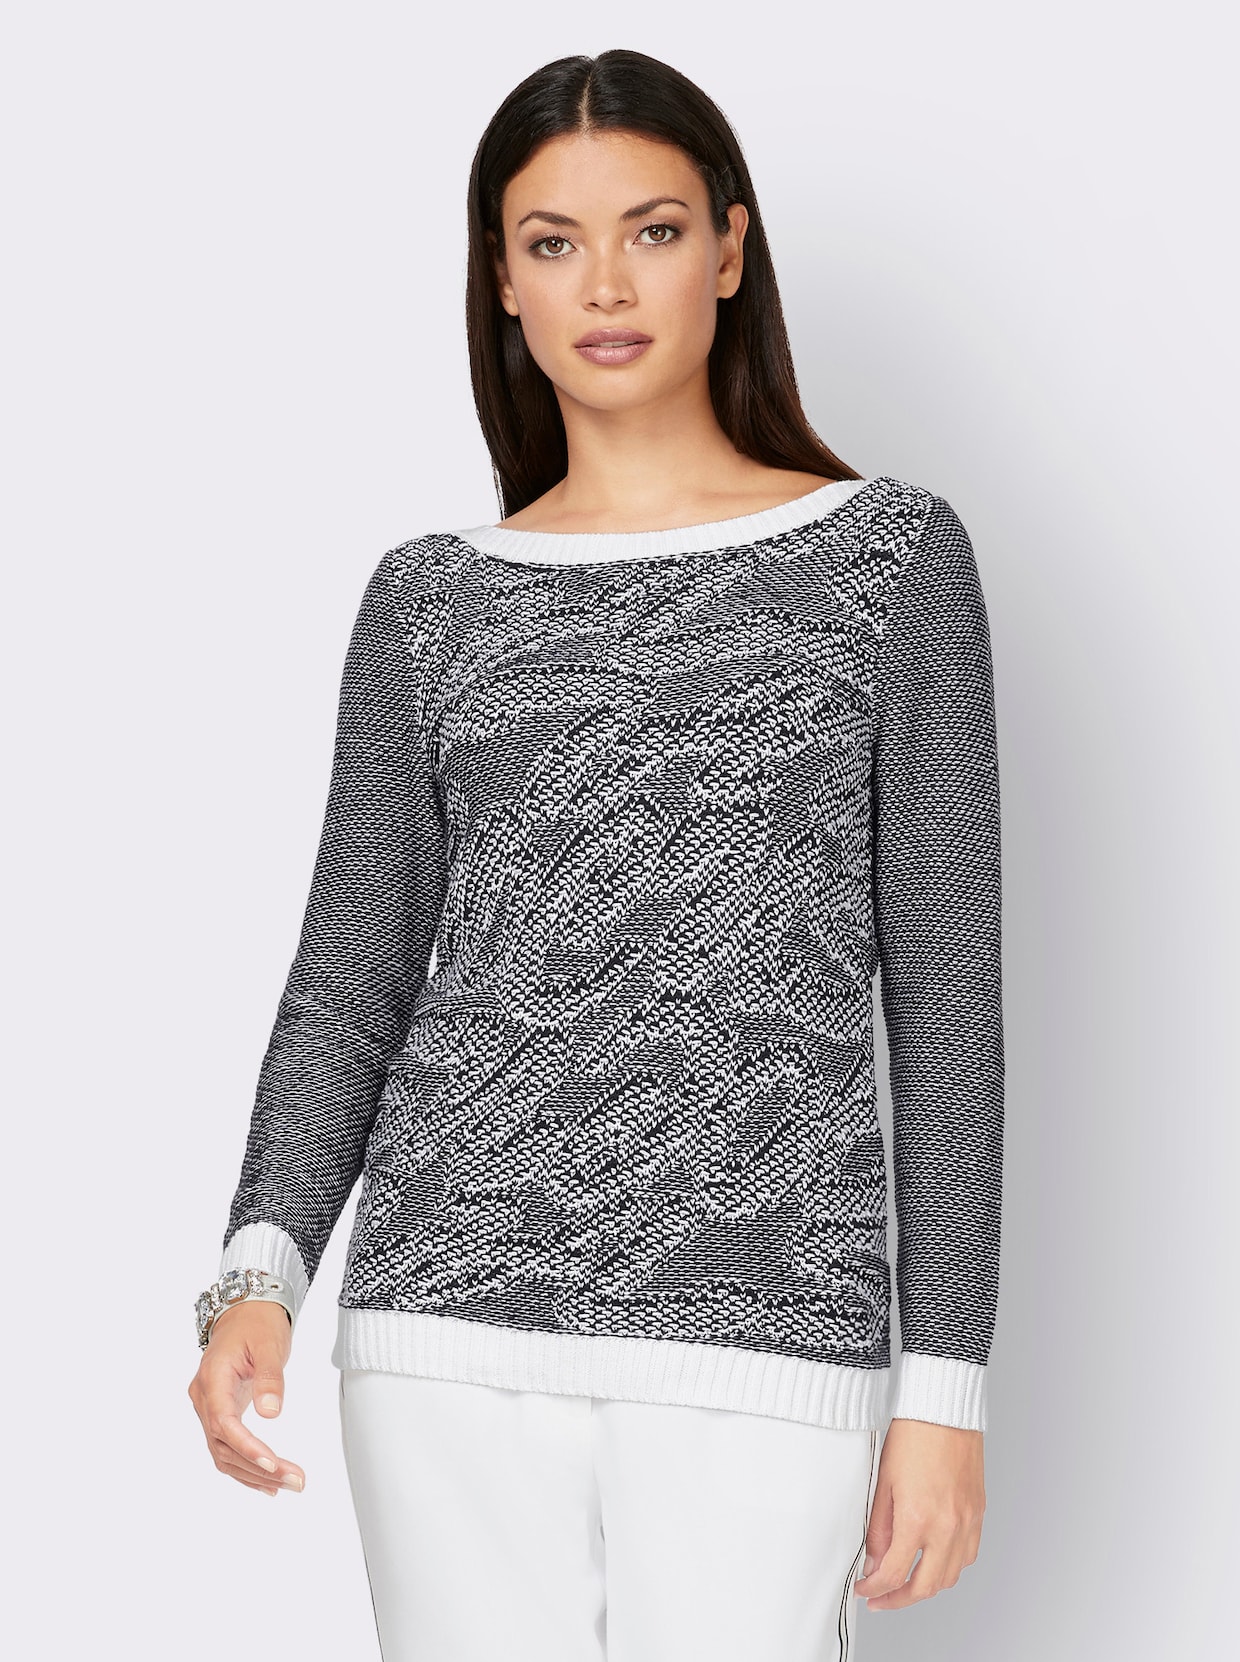 Langarm-Pullover - schwarz-weiß-bedruckt